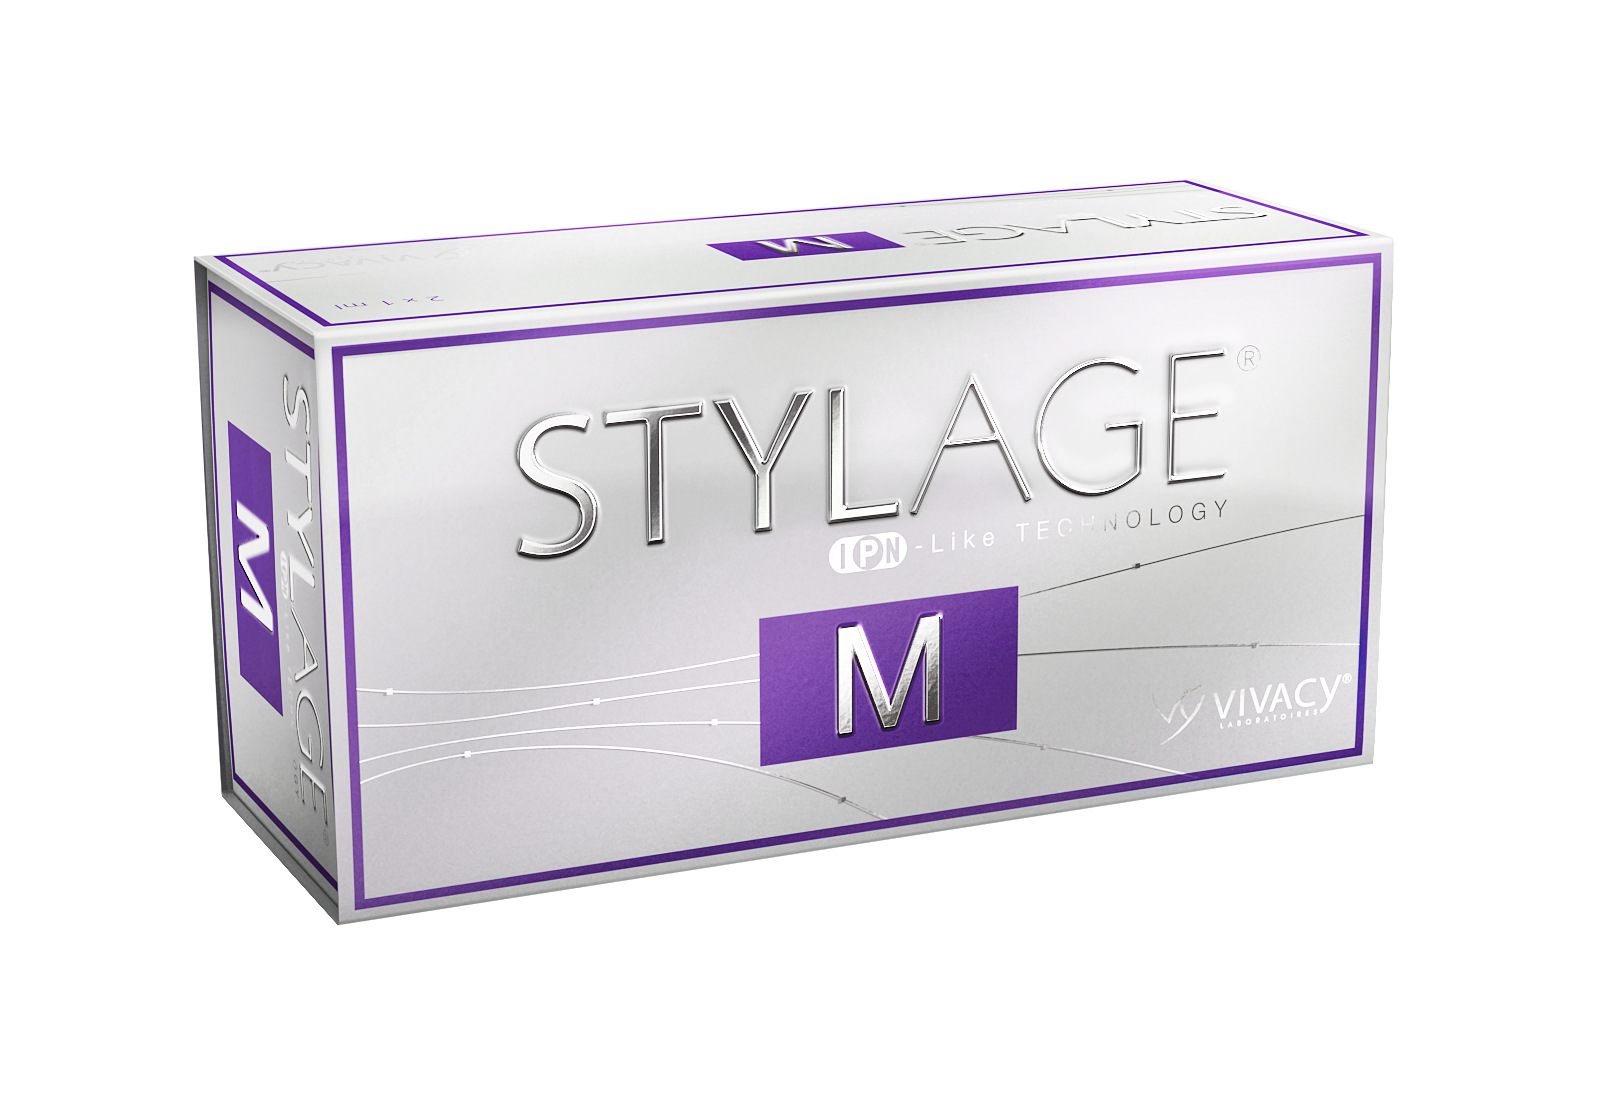 Стеллаж губы цена. Vivacy Stylage. Vivacy Stylage Hydro. Stylage m филлер 1 ml. Stylage XL (1 мл).